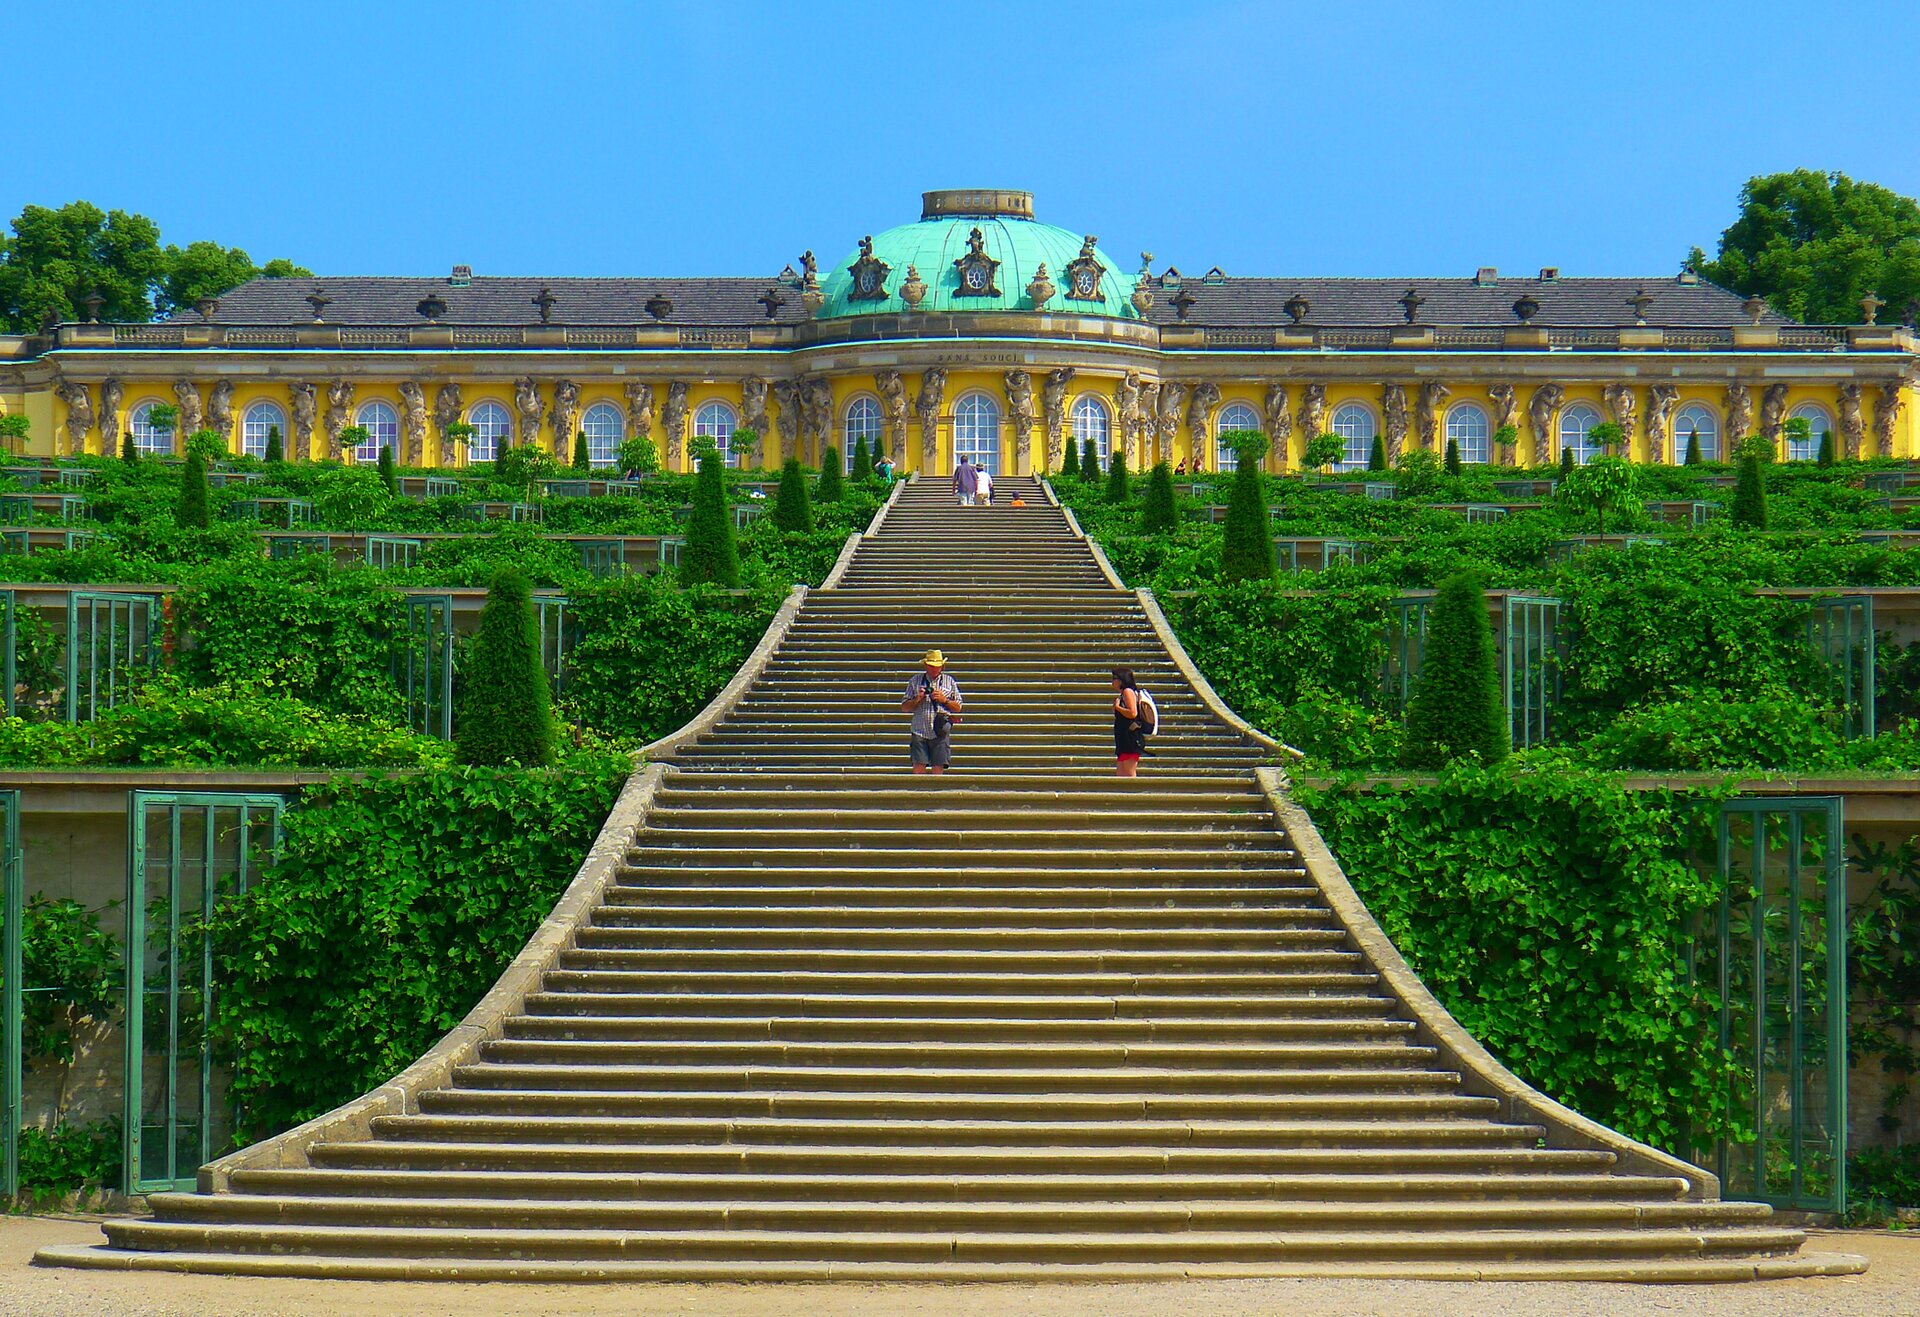 Ogród w Sanssouci: Pałac królewski w Poczdamie Ogród w Sanssouci: Pałac królewski w Poczdamie Źródło: Mbzt, Wikimedia Commons, licencja: CC BY-SA 3.0.